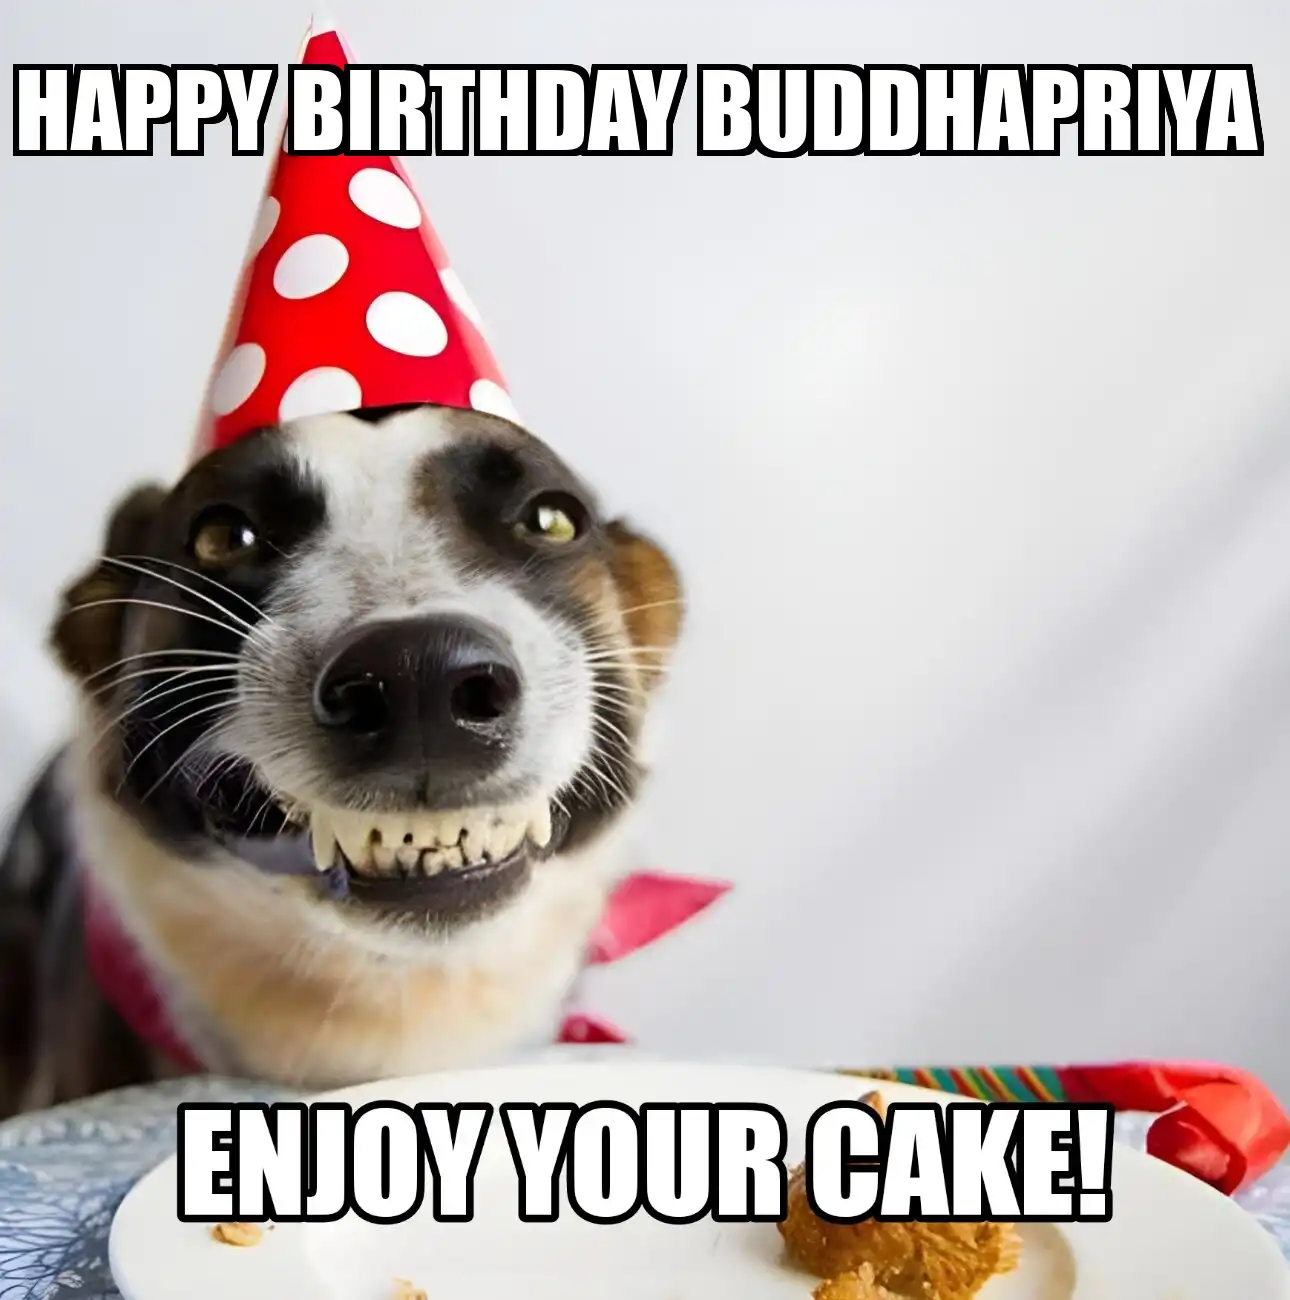 Happy Birthday Buddhapriya Enjoy Your Cake Dog Meme